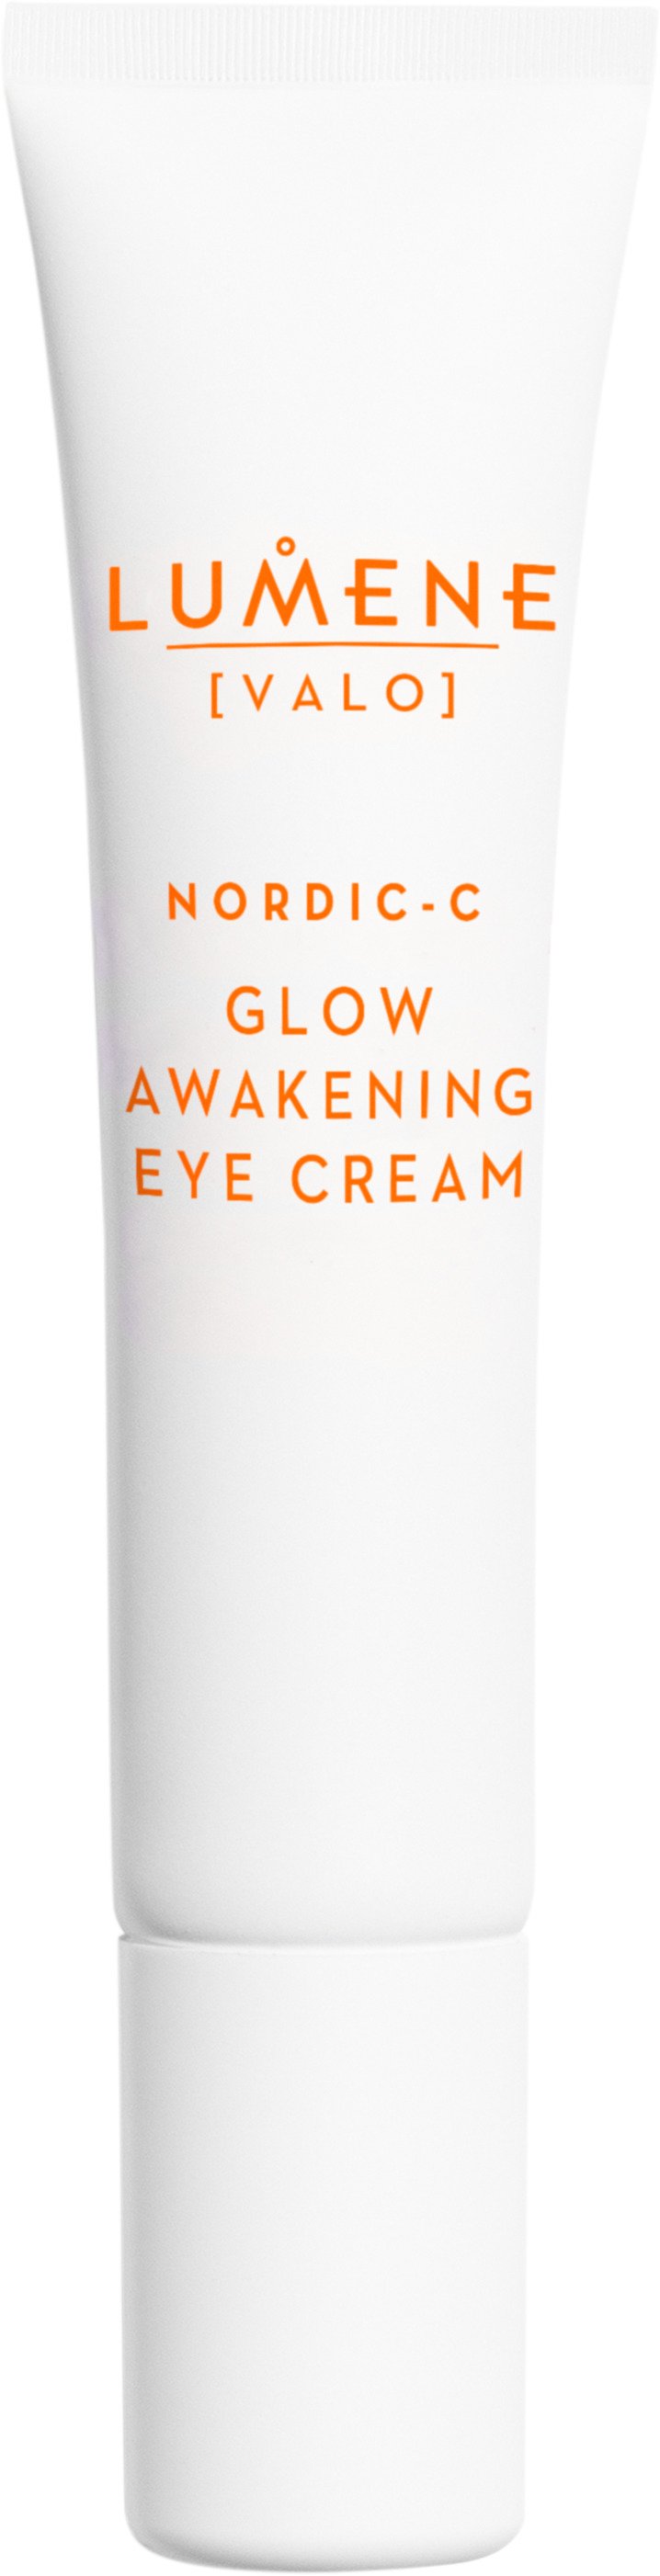 Lumene Nordic-C Glow Awakening Eye Cream 15ml